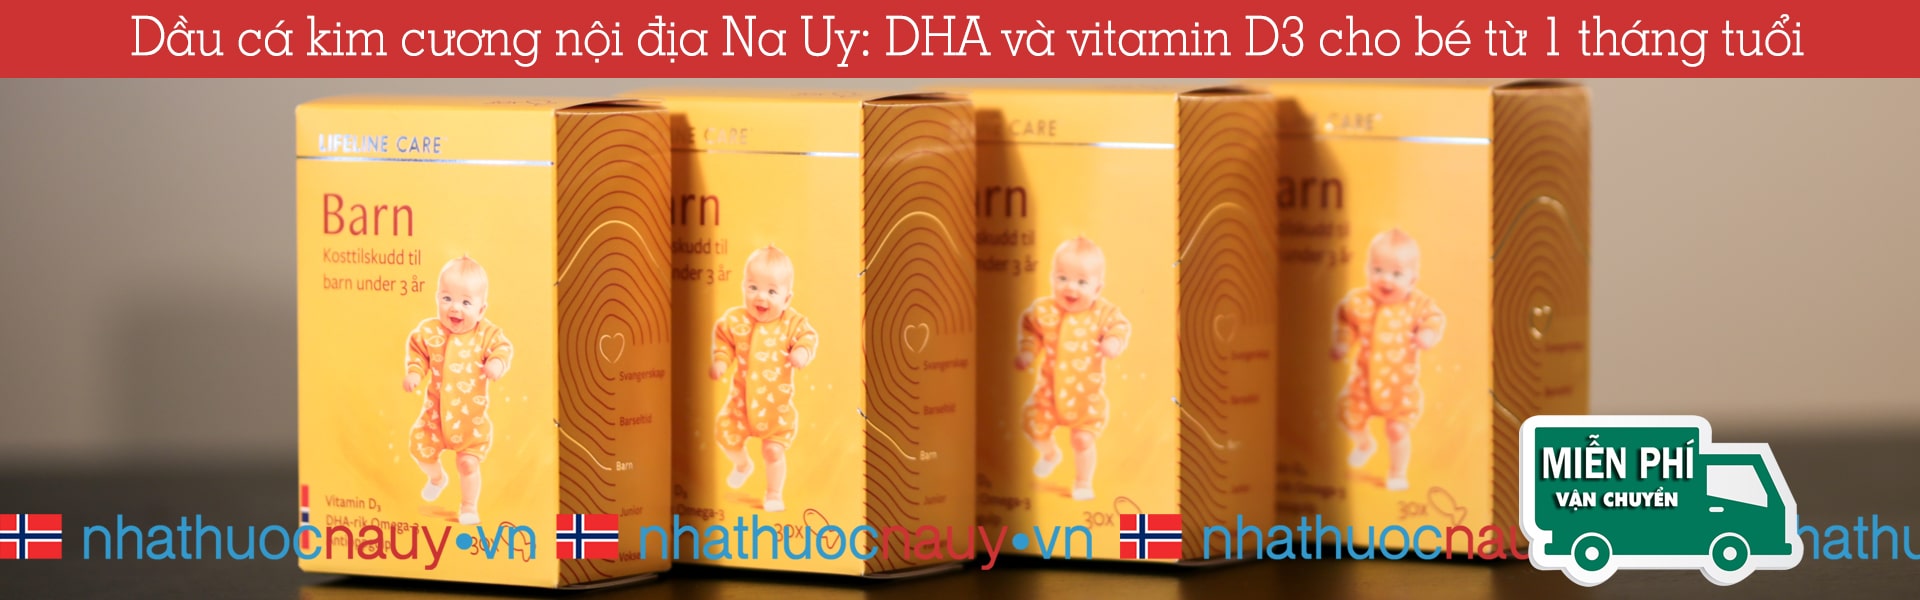 Dầu cá kim cương | DHA và vitamin D3 cho bé từ 1 tháng tuổi | Lifeline Care Barn